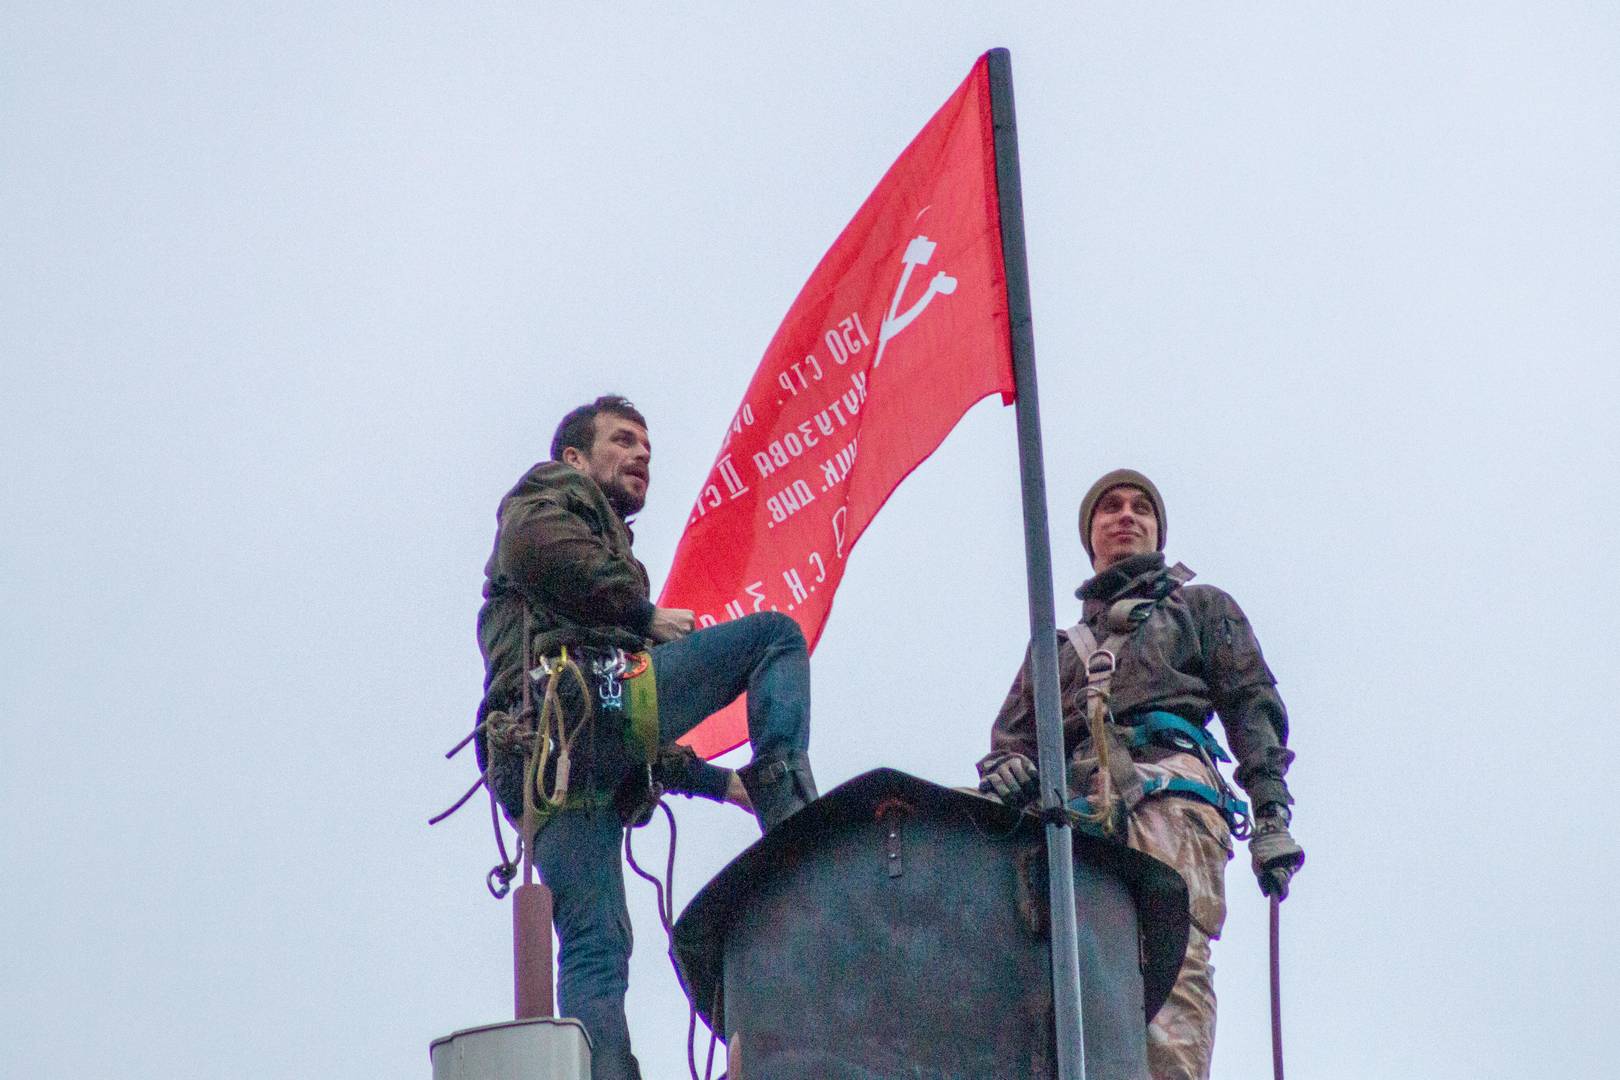 Члены Александровской коммуны «Сути времени» и копия Знамени Победы, установленная на фабричной трубе в честь 75-летия Победы. 9 мая 2020 г.